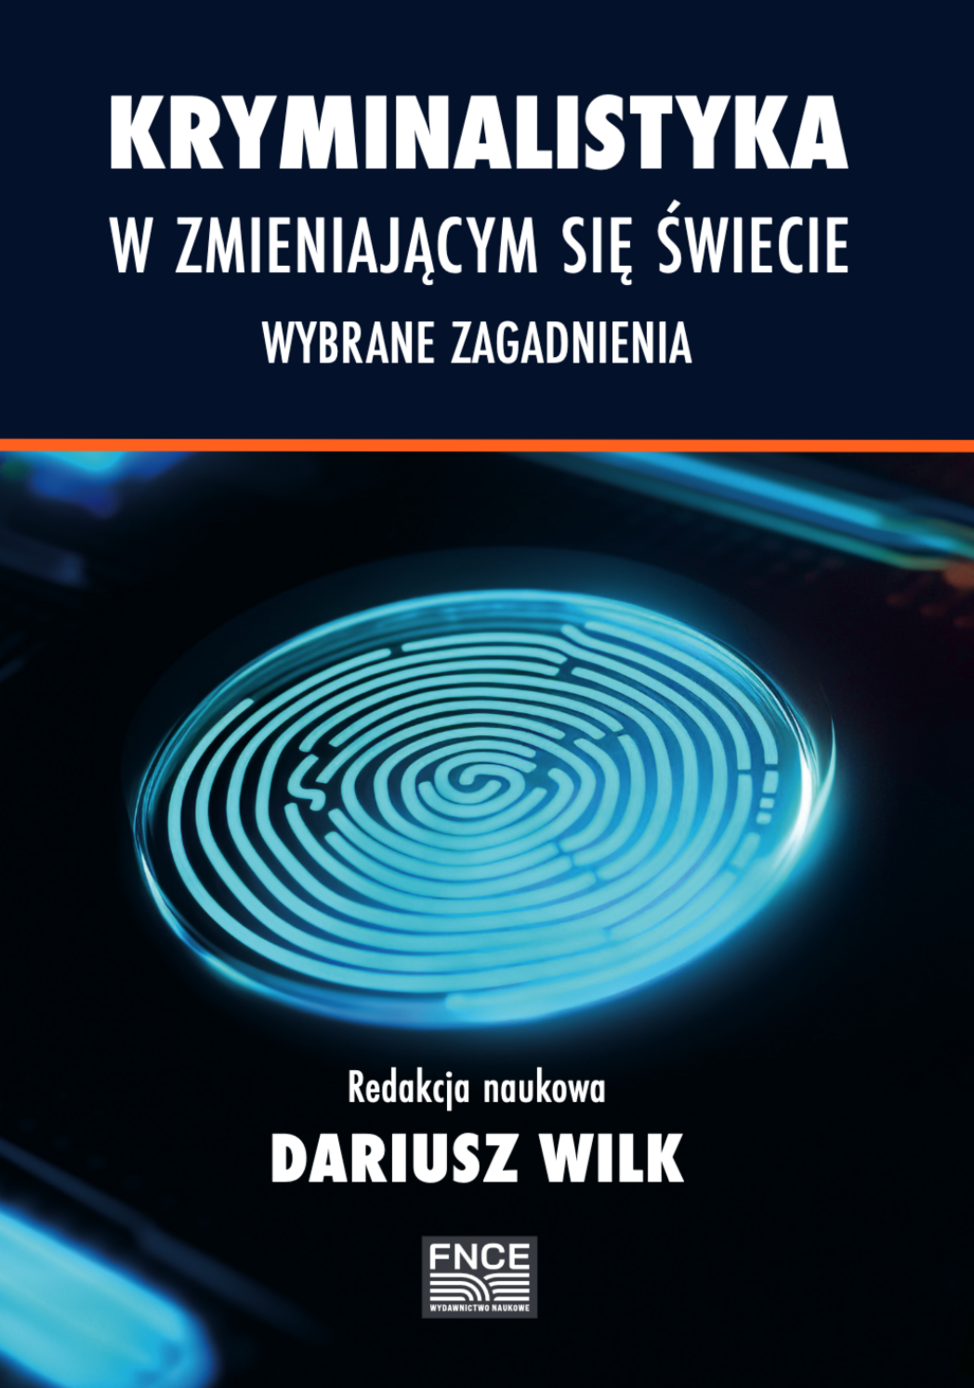 Nowa książka pod redakcją dr. Dariusza Wilka z udziałem Członków Koła!